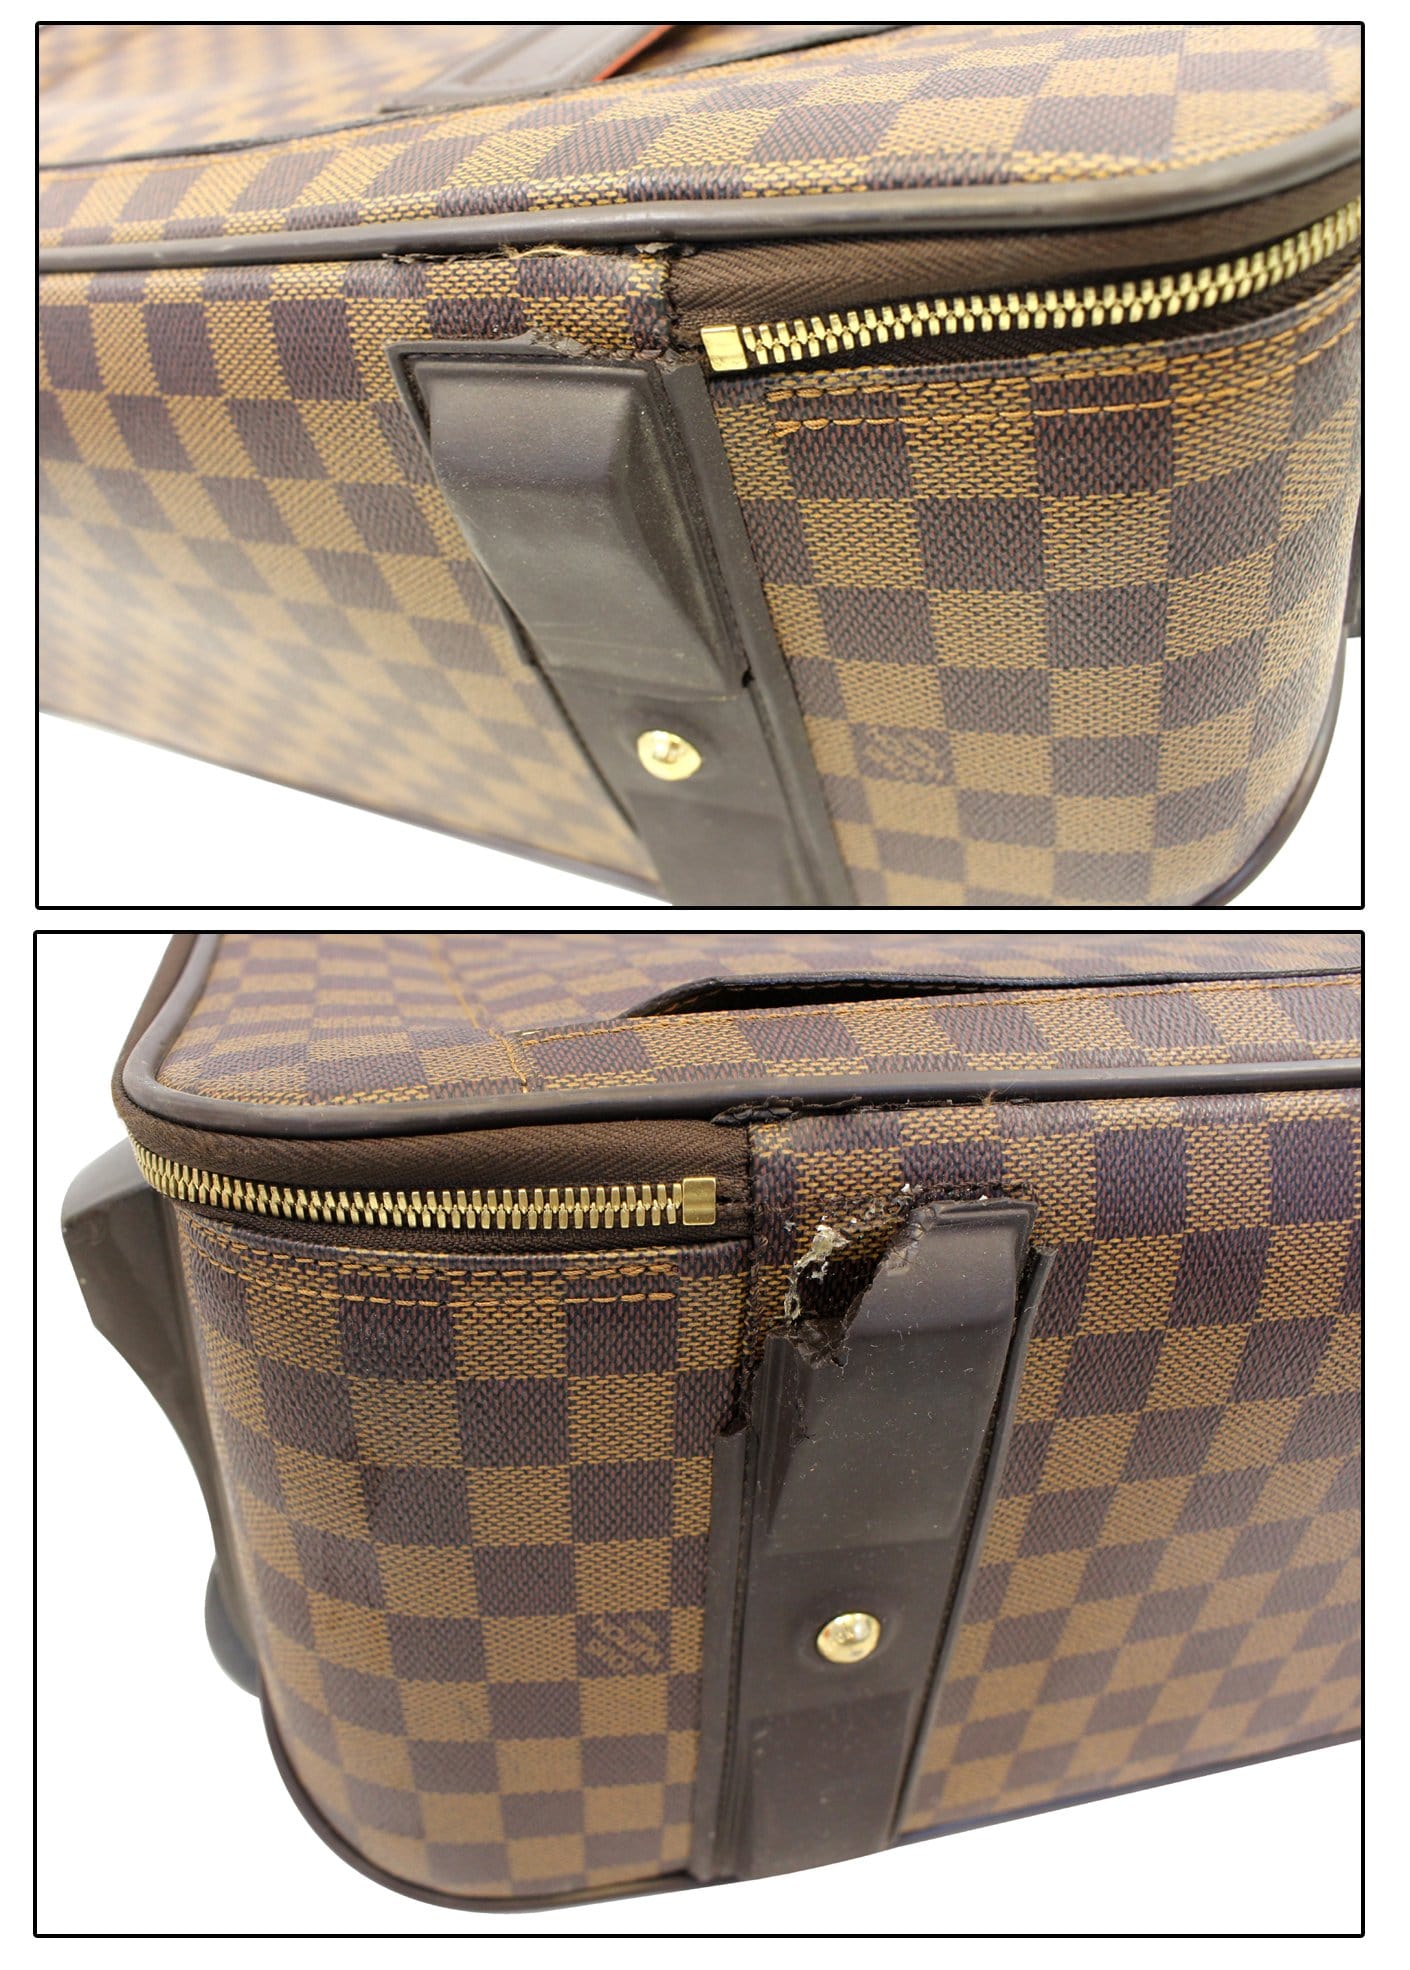 Auth Louis Vuitton Damier Pegase 45 Travel Bag Carry-On Suitcase  9D101440MKK"